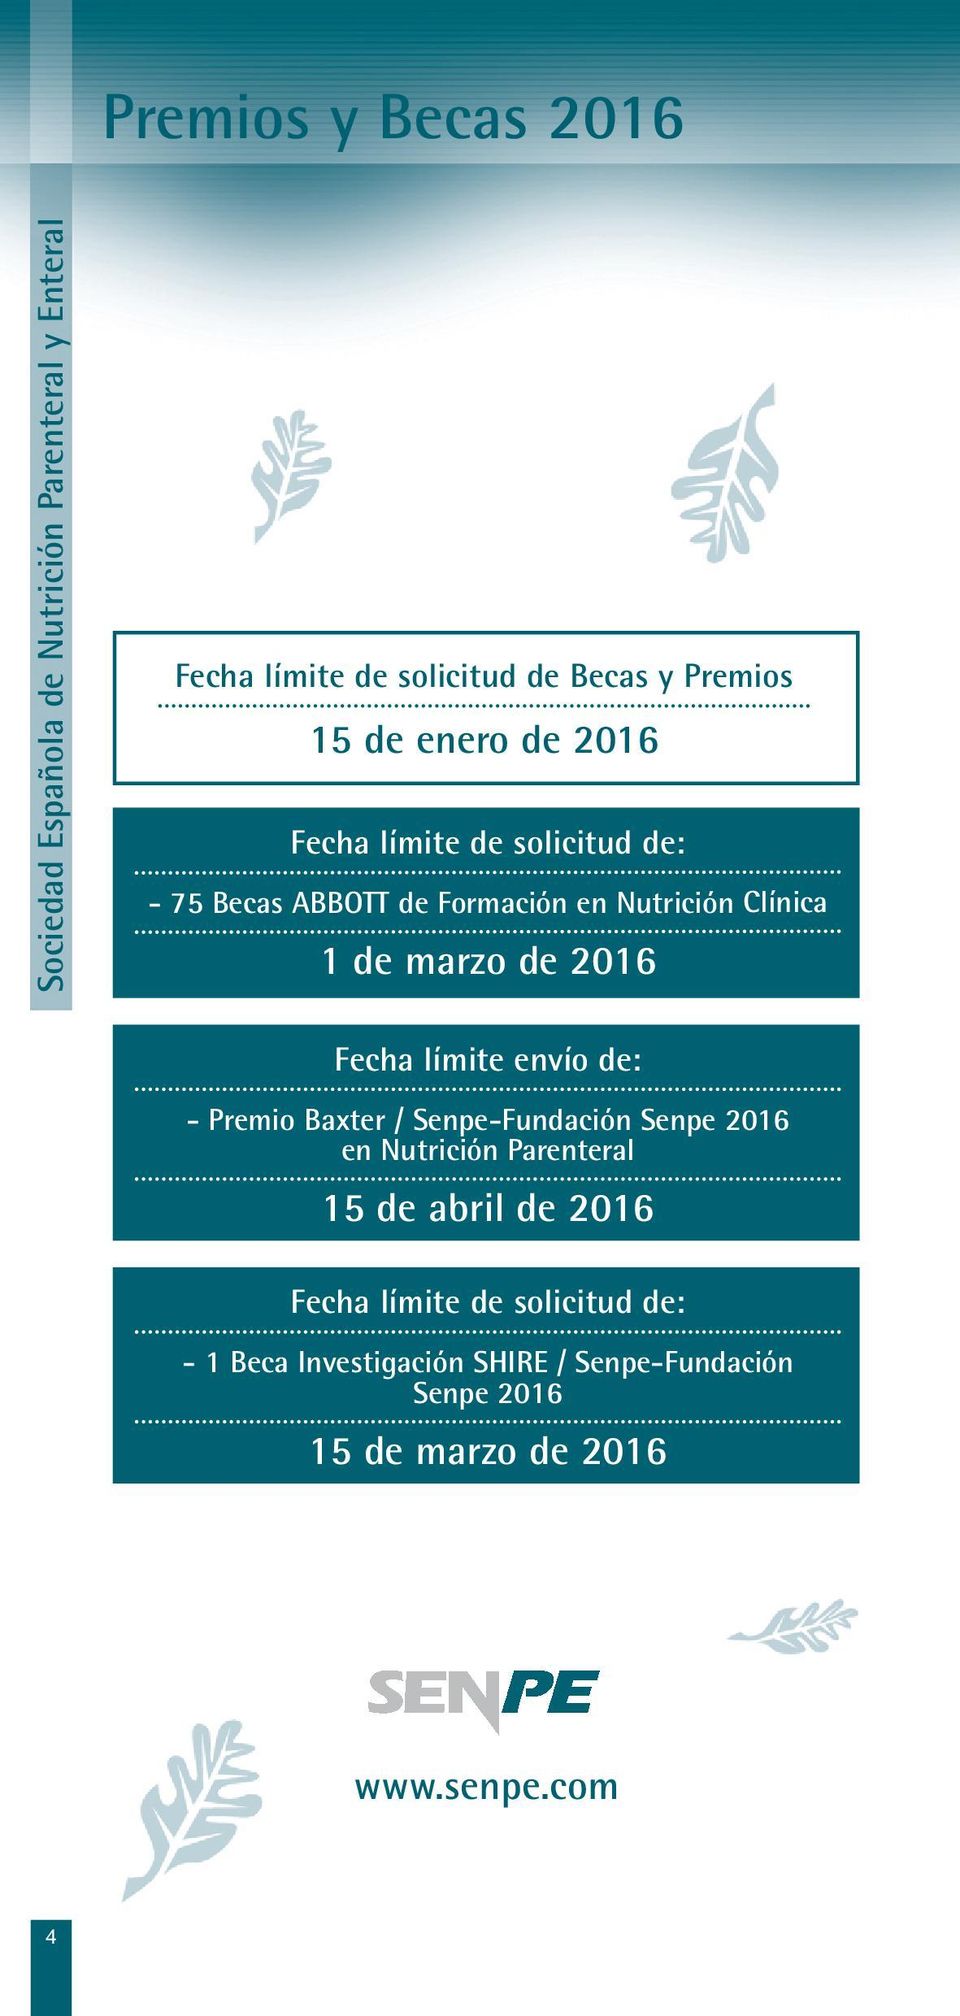 2016 Fecha límite envío de: - Premio Baxter / Senpe-Fundación Senpe 2016 en Nutrición Parenteral 15 de abril de 2016